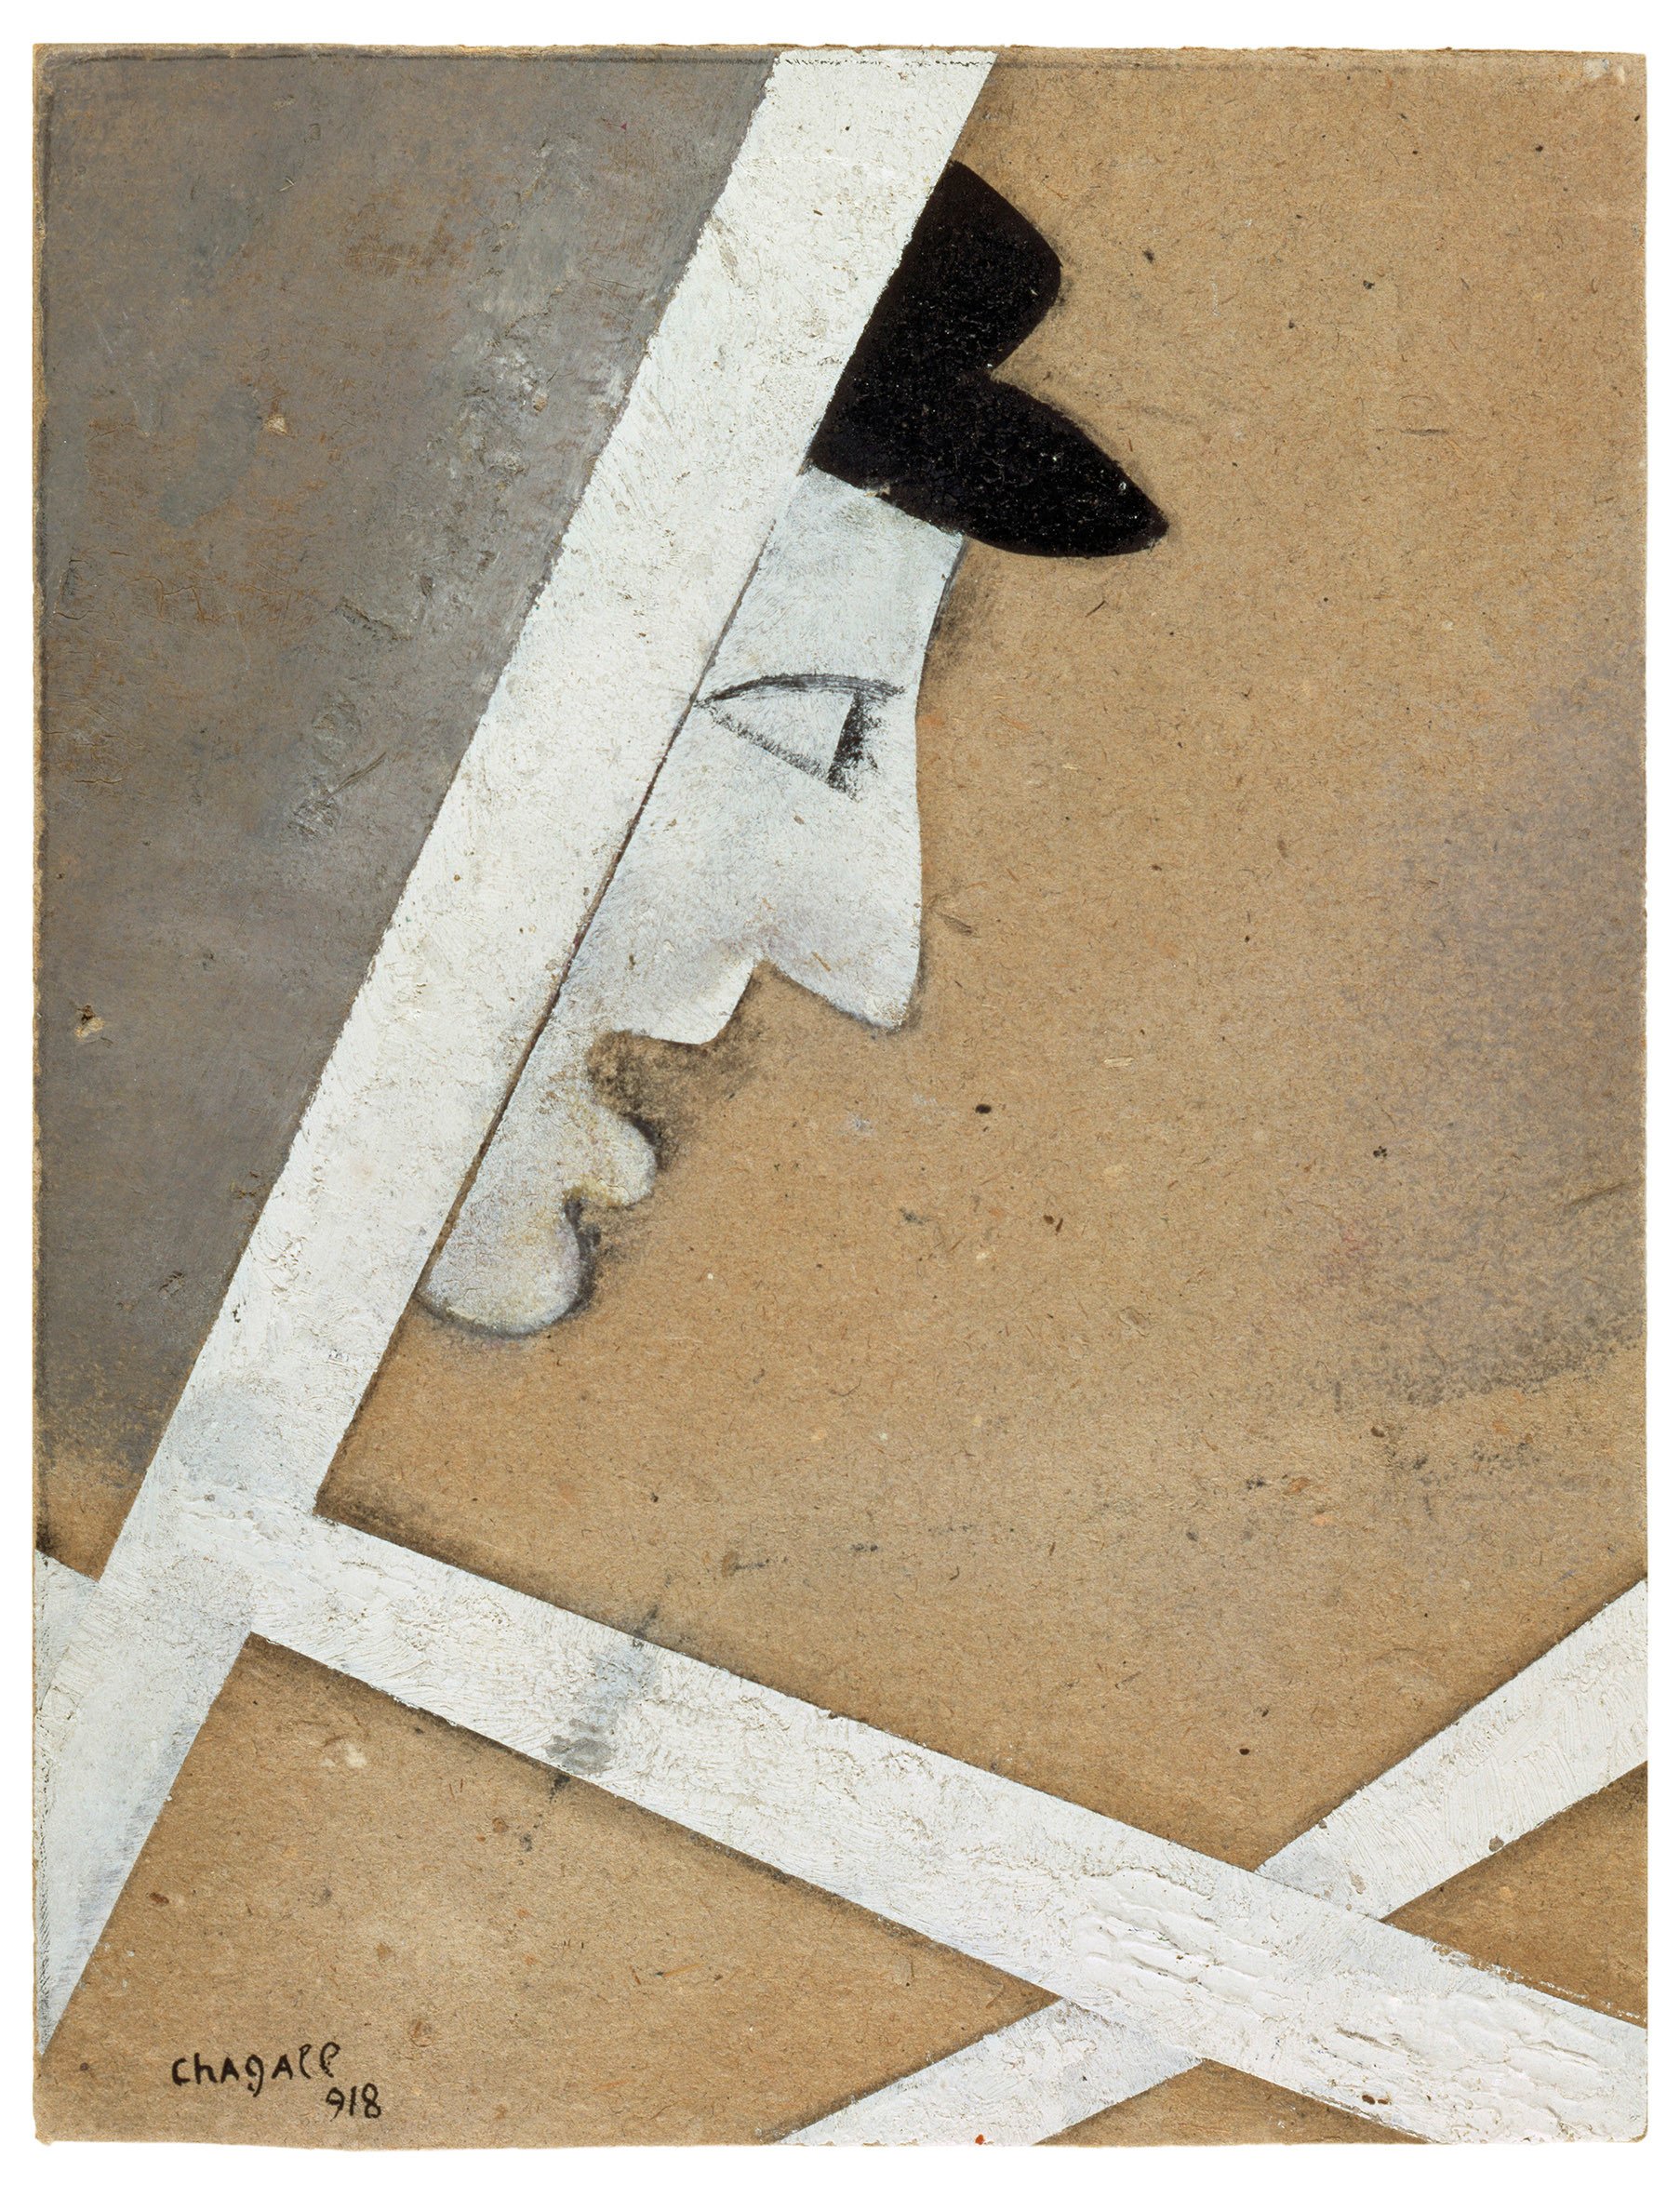 Marc Chagall: Das Profil im Fenster, 1918, Grafit, Gouache und Tinte auf Karton, 22 x 16,8 cm, Musée national d'art moderne/ Centre de création industrielle, Centre Georges Pompidou, Paris, © Pro Litteris, Zürich